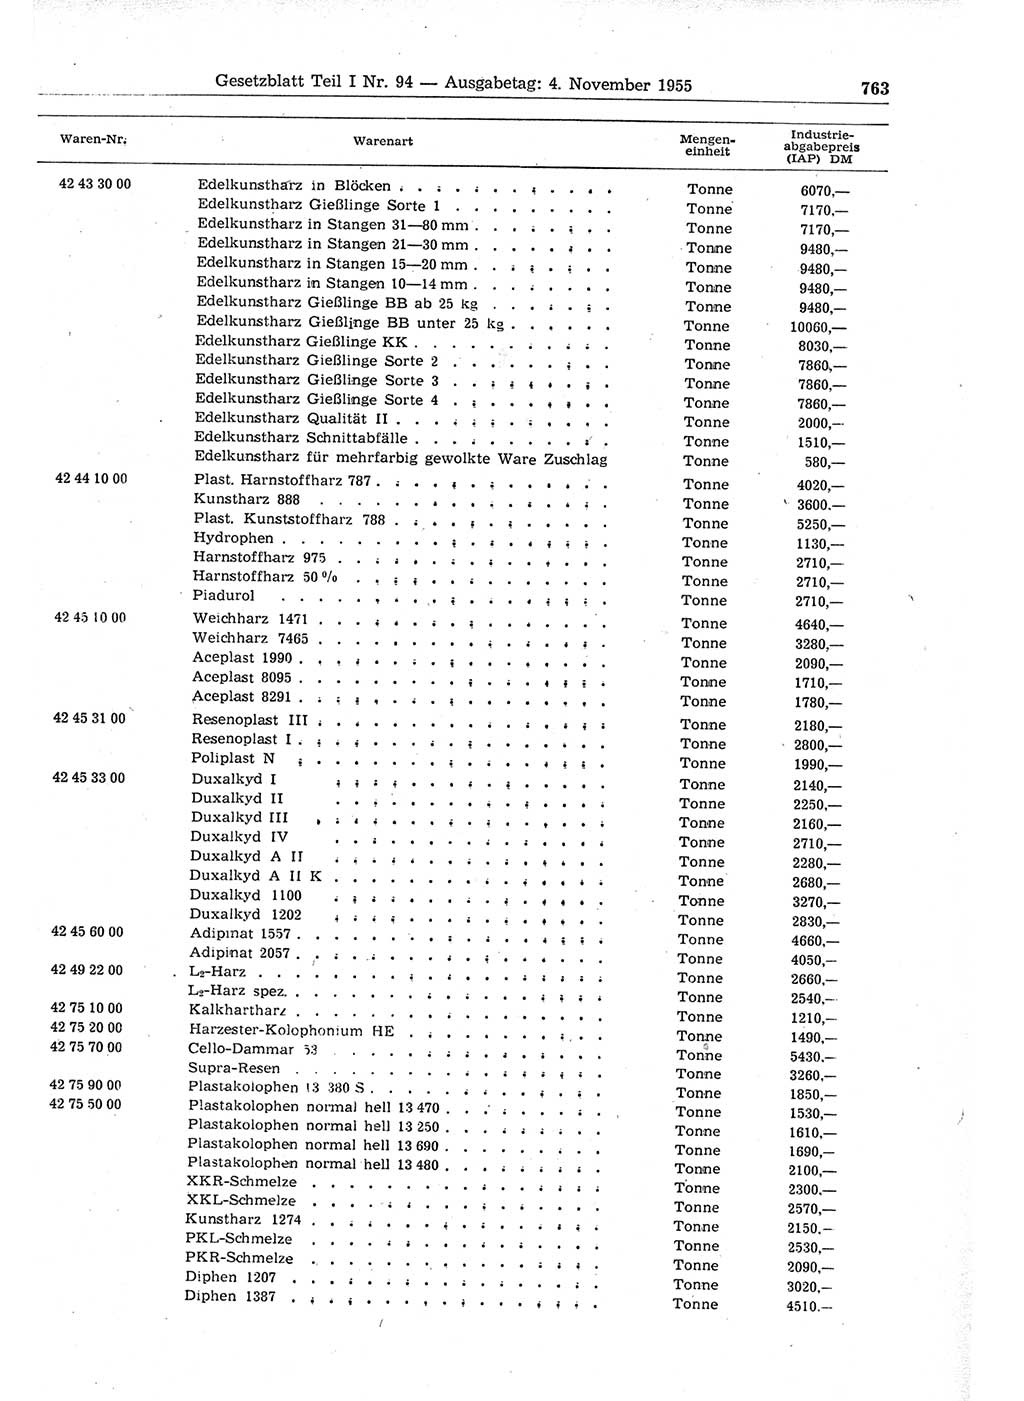 Gesetzblatt (GBl.) der Deutschen Demokratischen Republik (DDR) Teil Ⅰ 1955, Seite 763 (GBl. DDR Ⅰ 1955, S. 763)